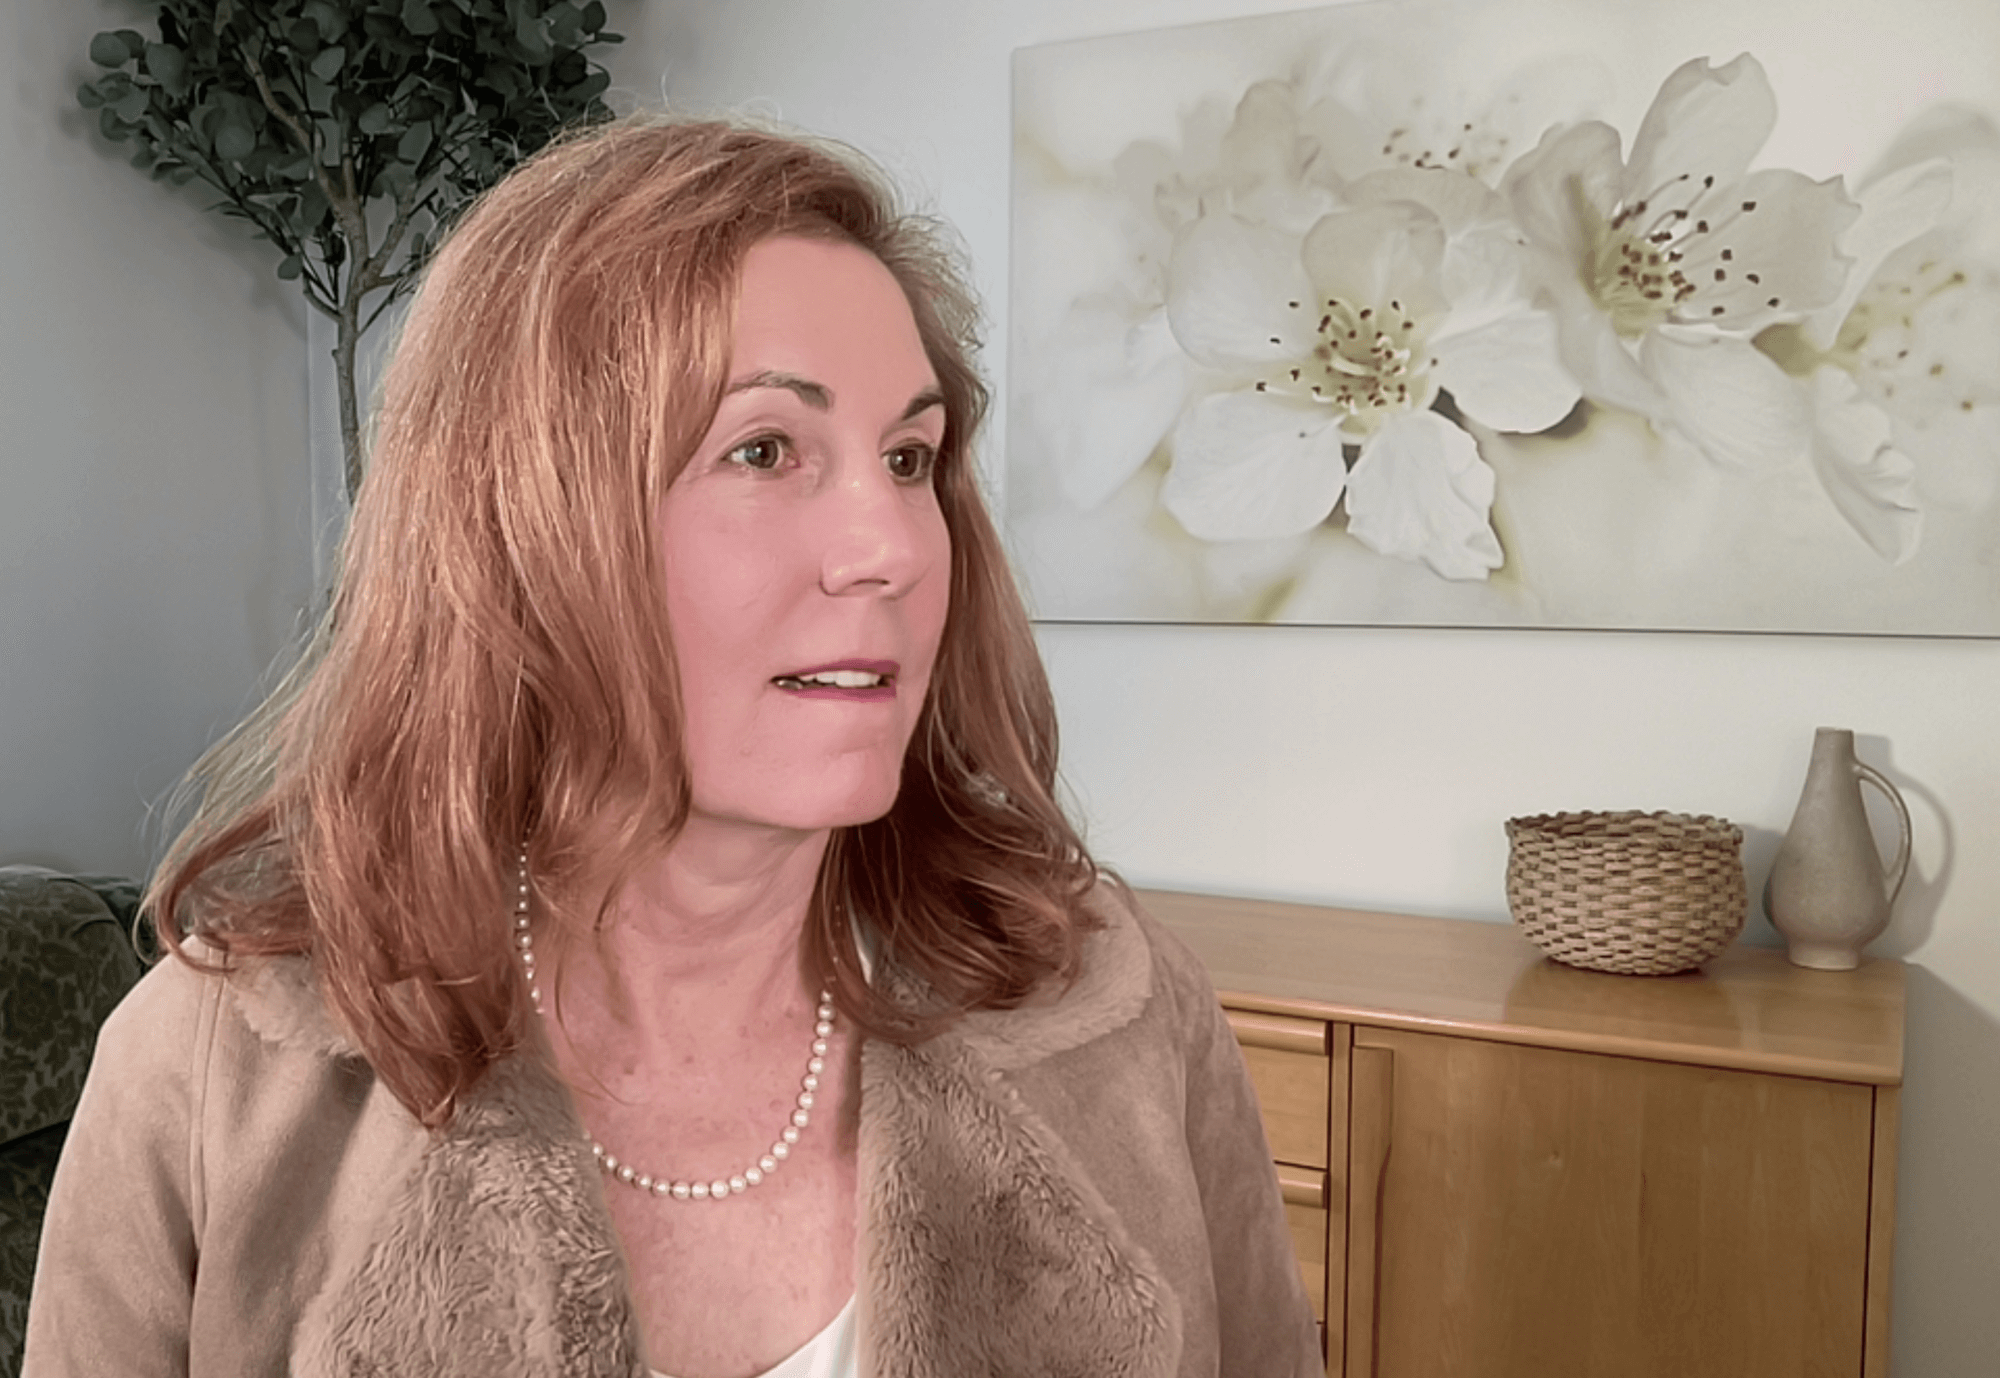 Anna Krueger teaches therapy biztech